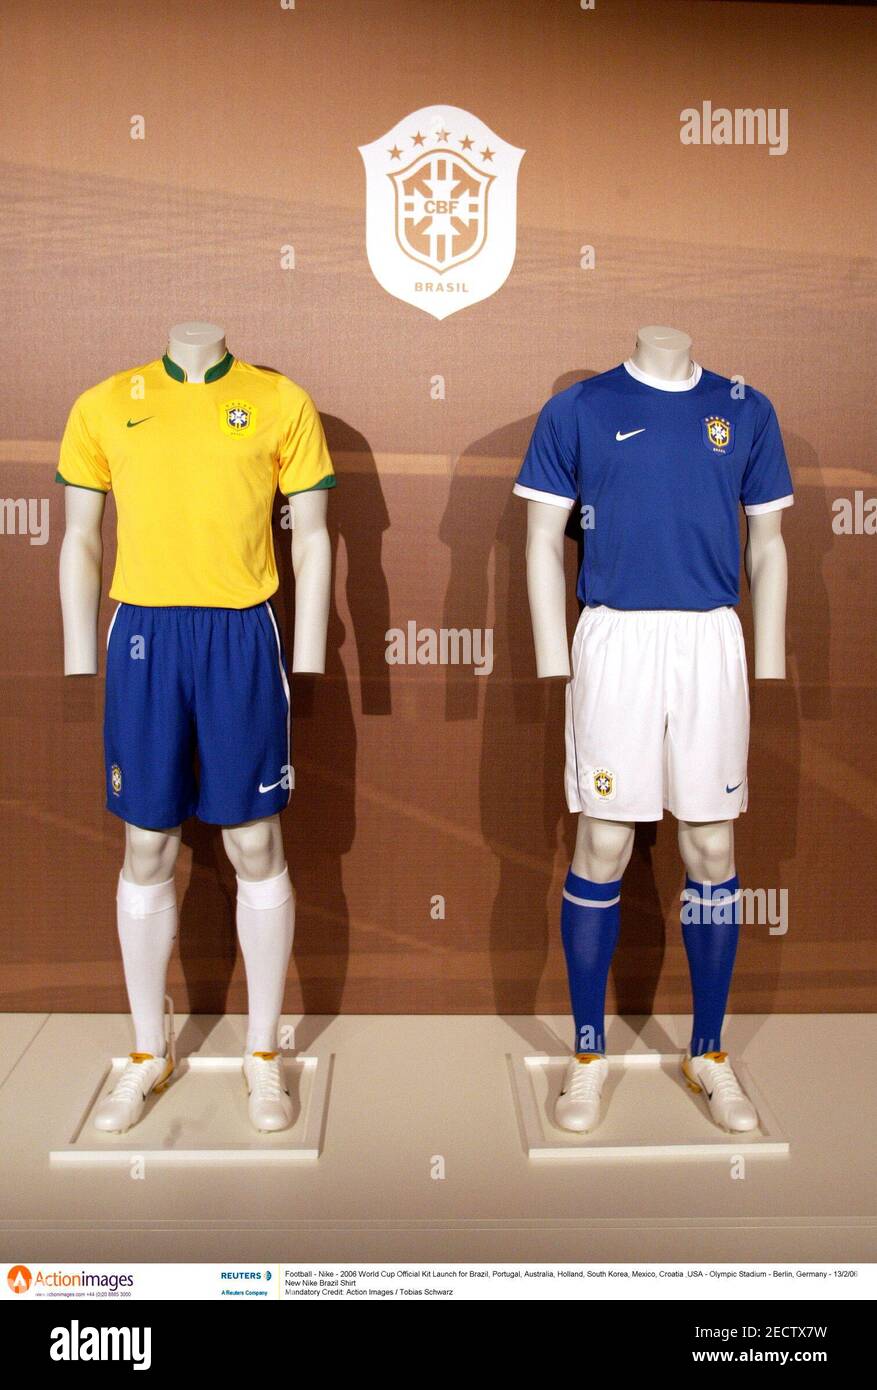 Fútbol - Nike - lanzamiento de la equipación oficial de la Copa Mundial 2006 para Brasil, Portugal, Australia, del Sur, México, Croacia y EE.UU. - Estadio Olímpico - Alemania -